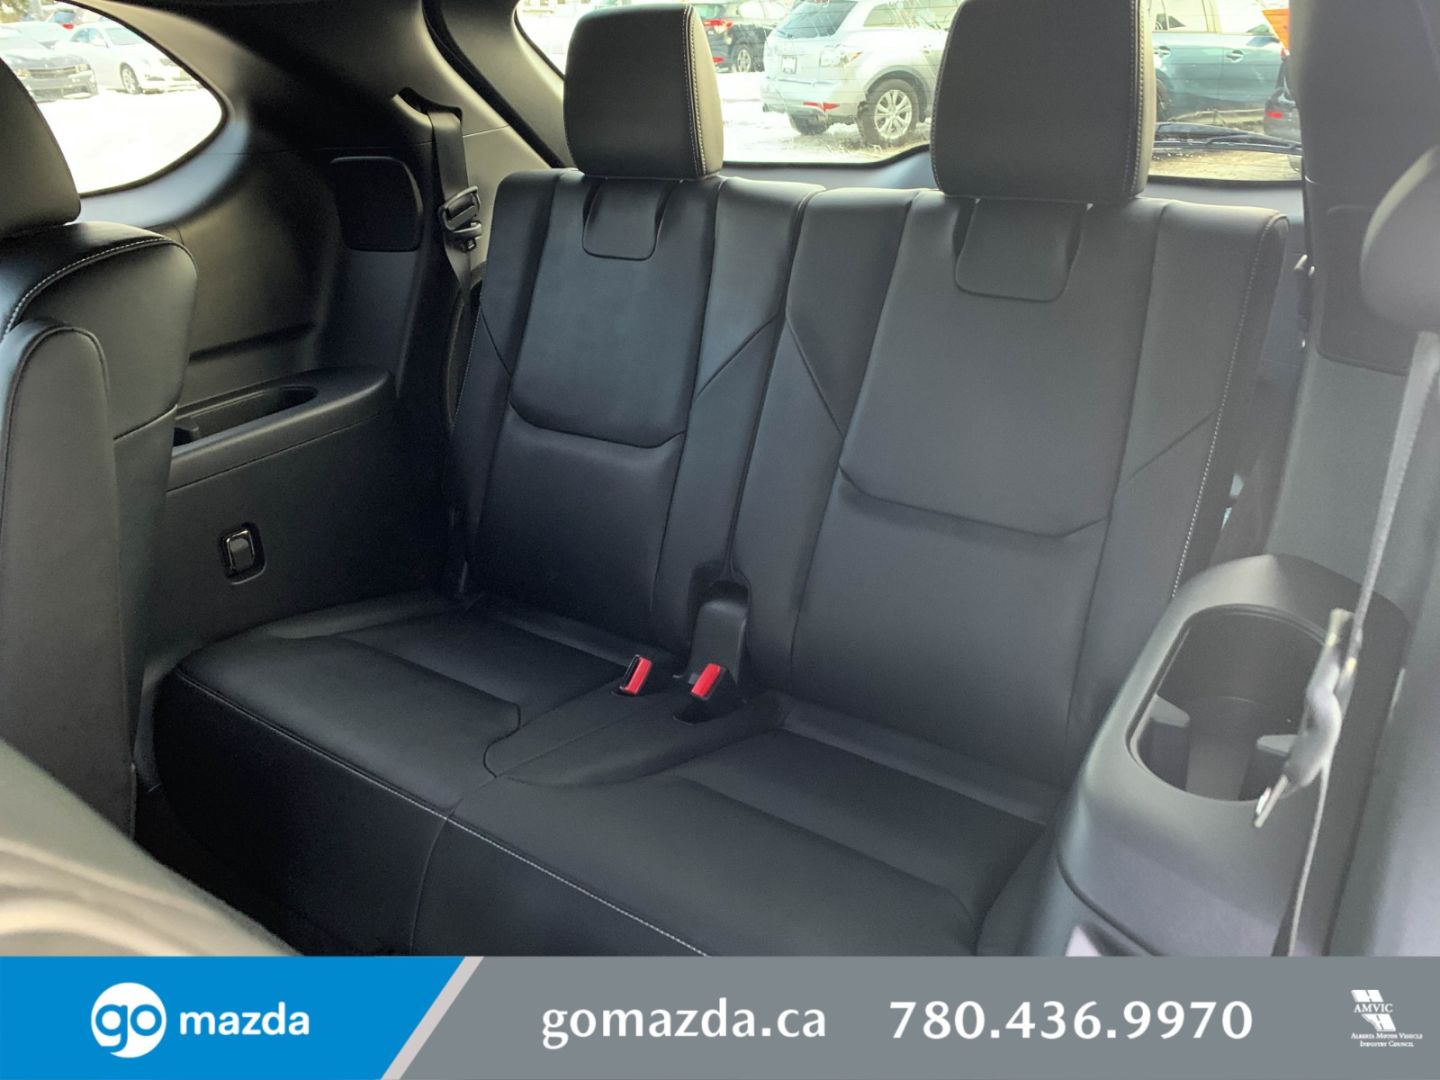 New 2021 Mazda Cx 9 Gs L 21c92389 Edmonton Alberta Go Auto